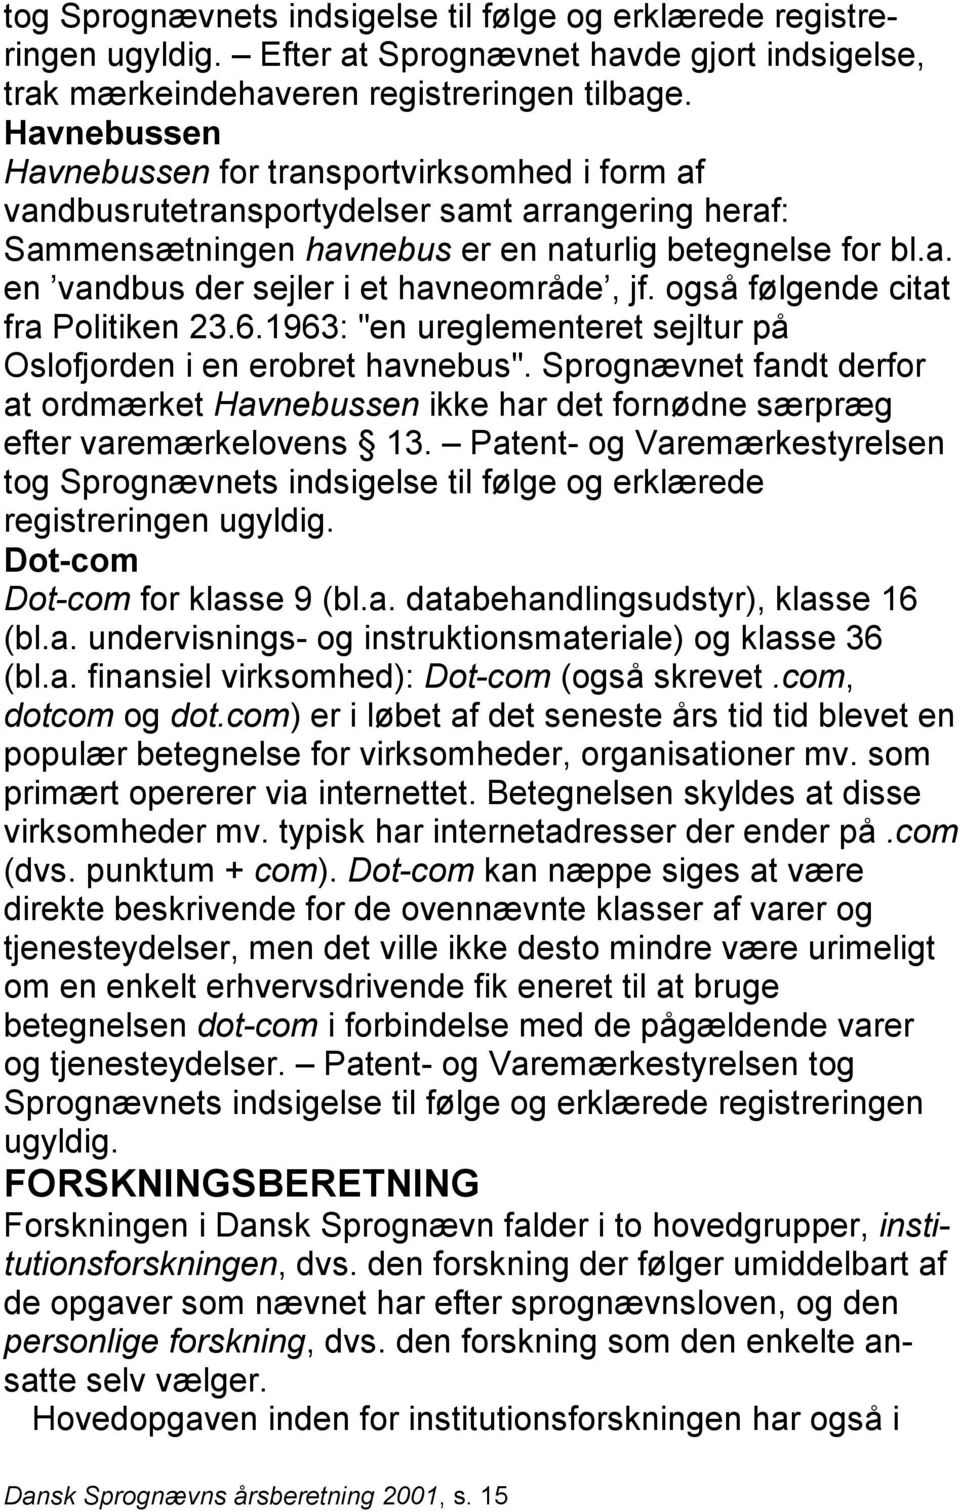 også følgende citat fra Politiken 23.6.1963: "en ureglementeret sejltur på Oslofjorden i en erobret havnebus".